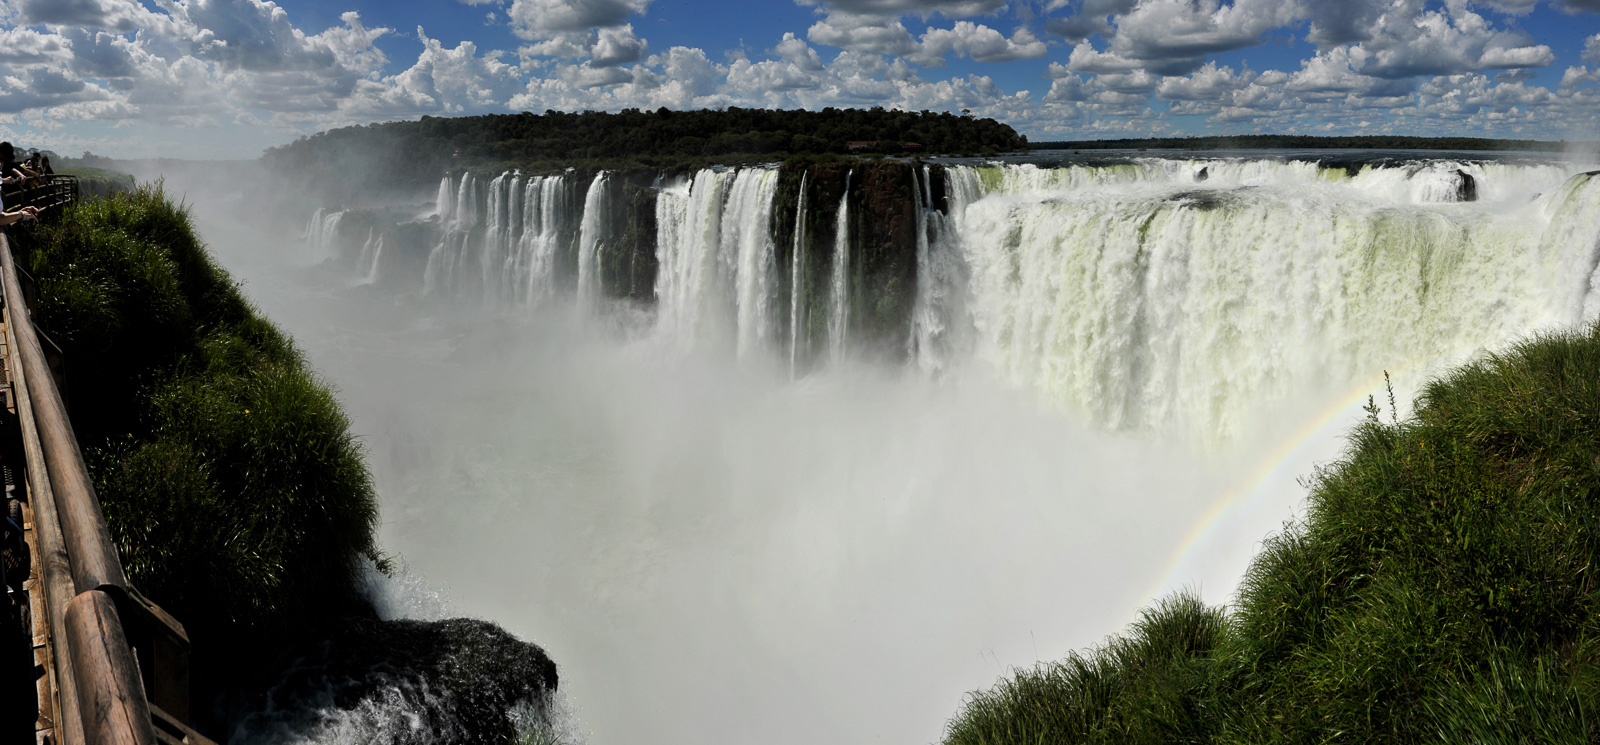 Cataratas del Iguazu [28 mm, 1/320 sec at f / 22, ISO 200]